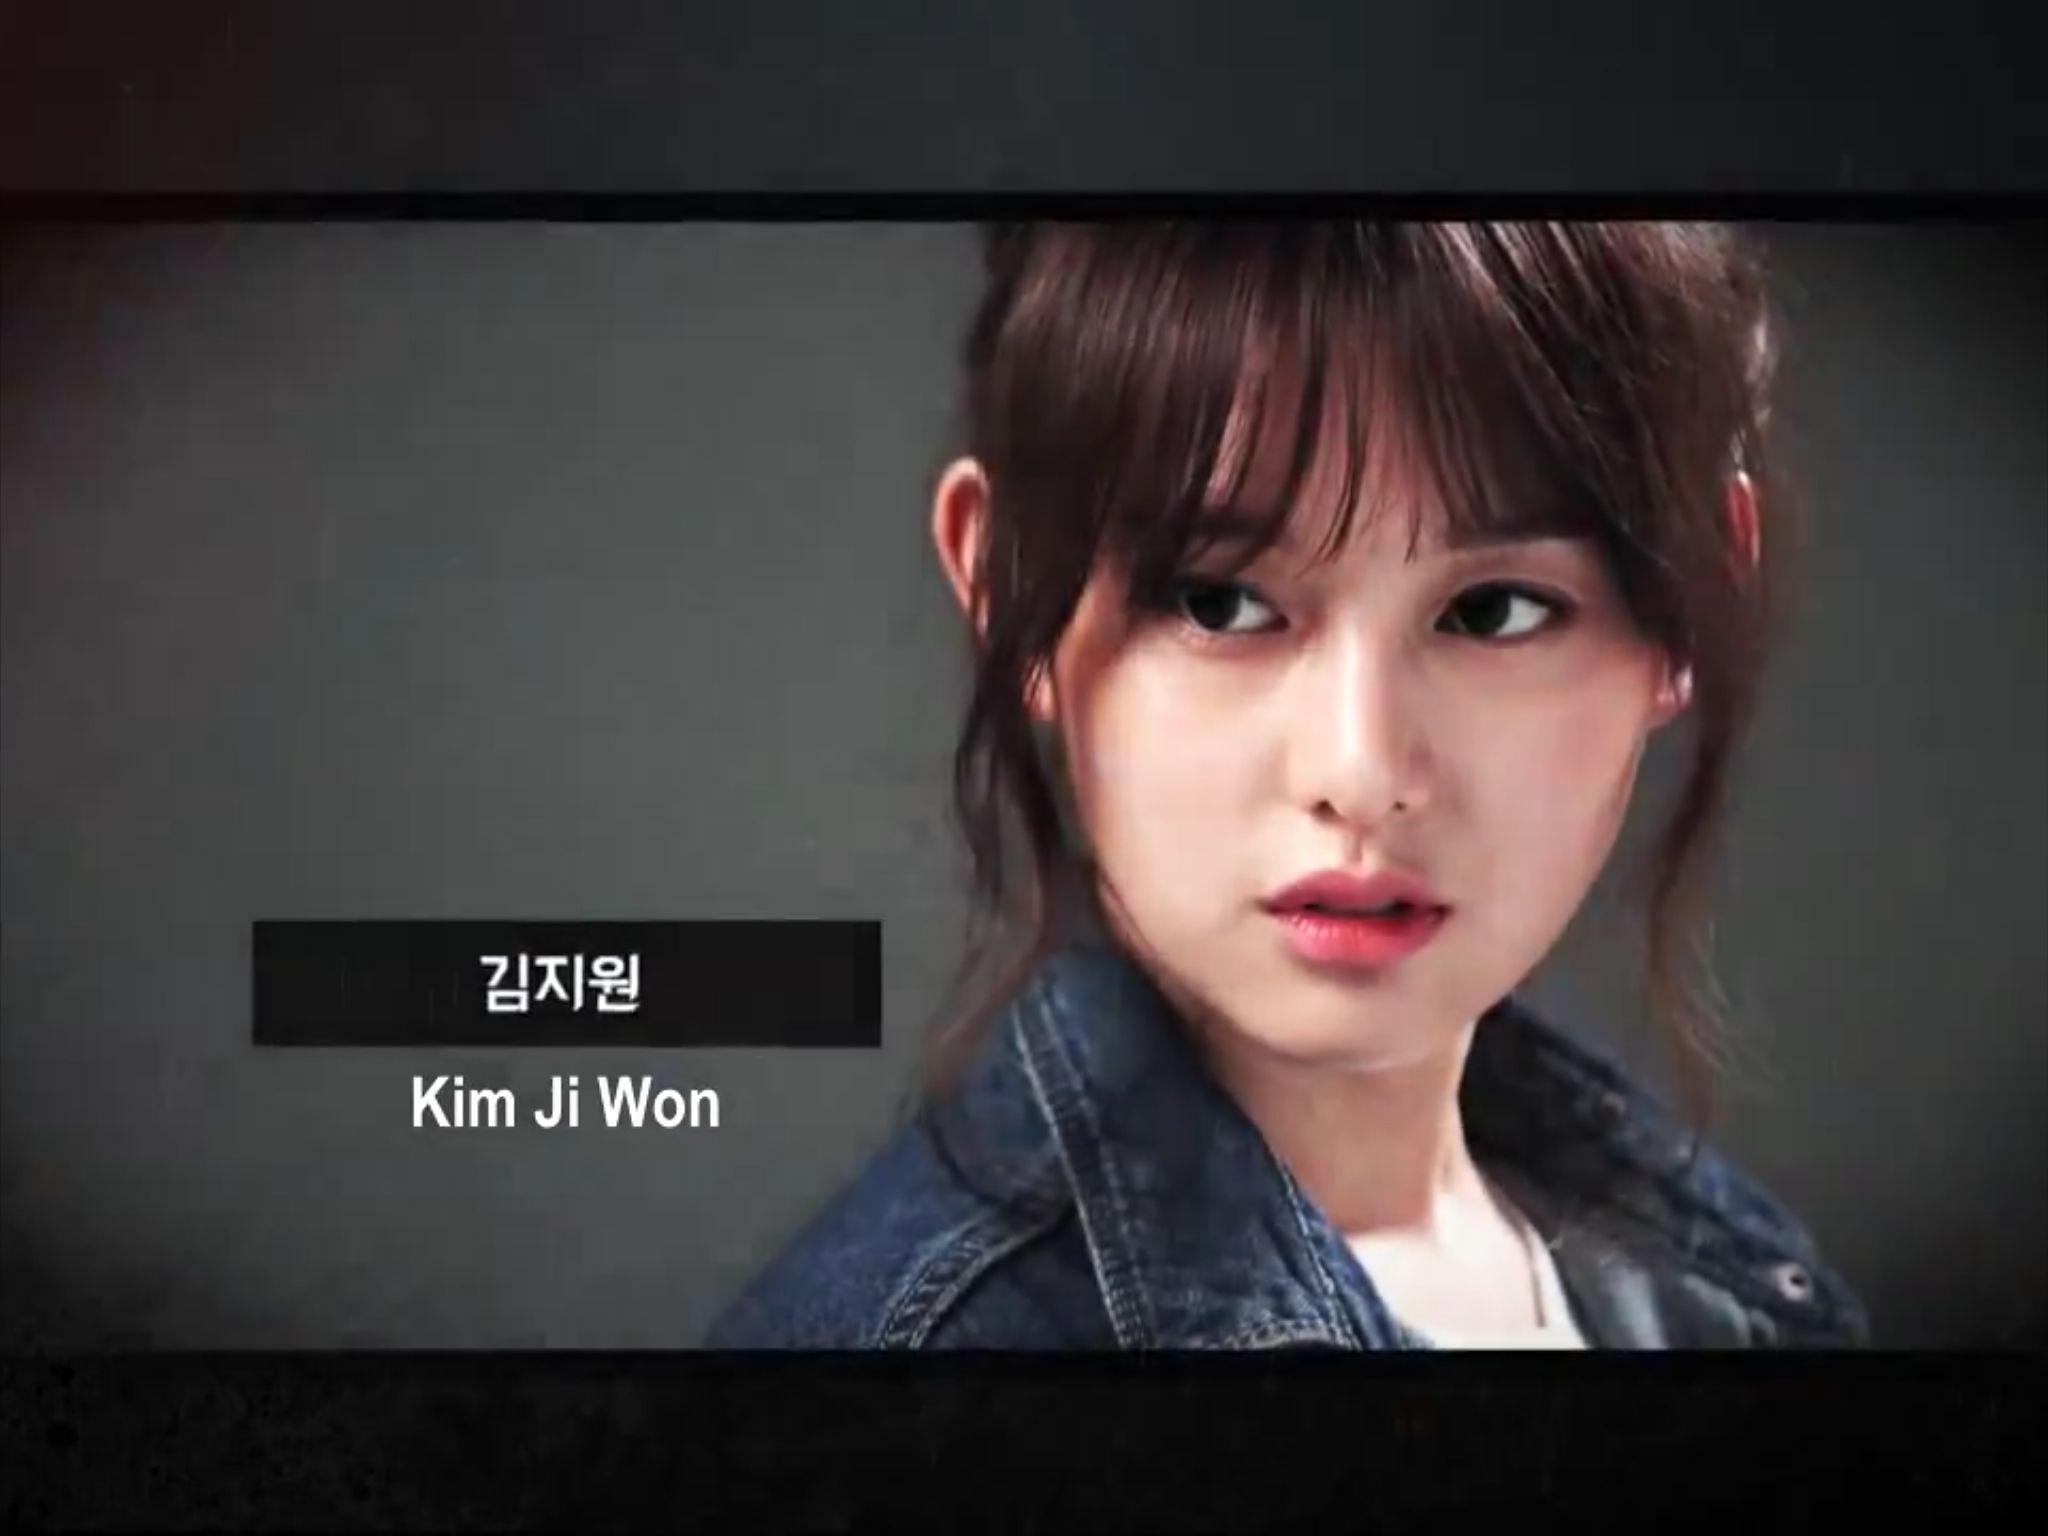 김지원 / Kim Ji Won in her new drama gap dong on TVn. Kim ji won